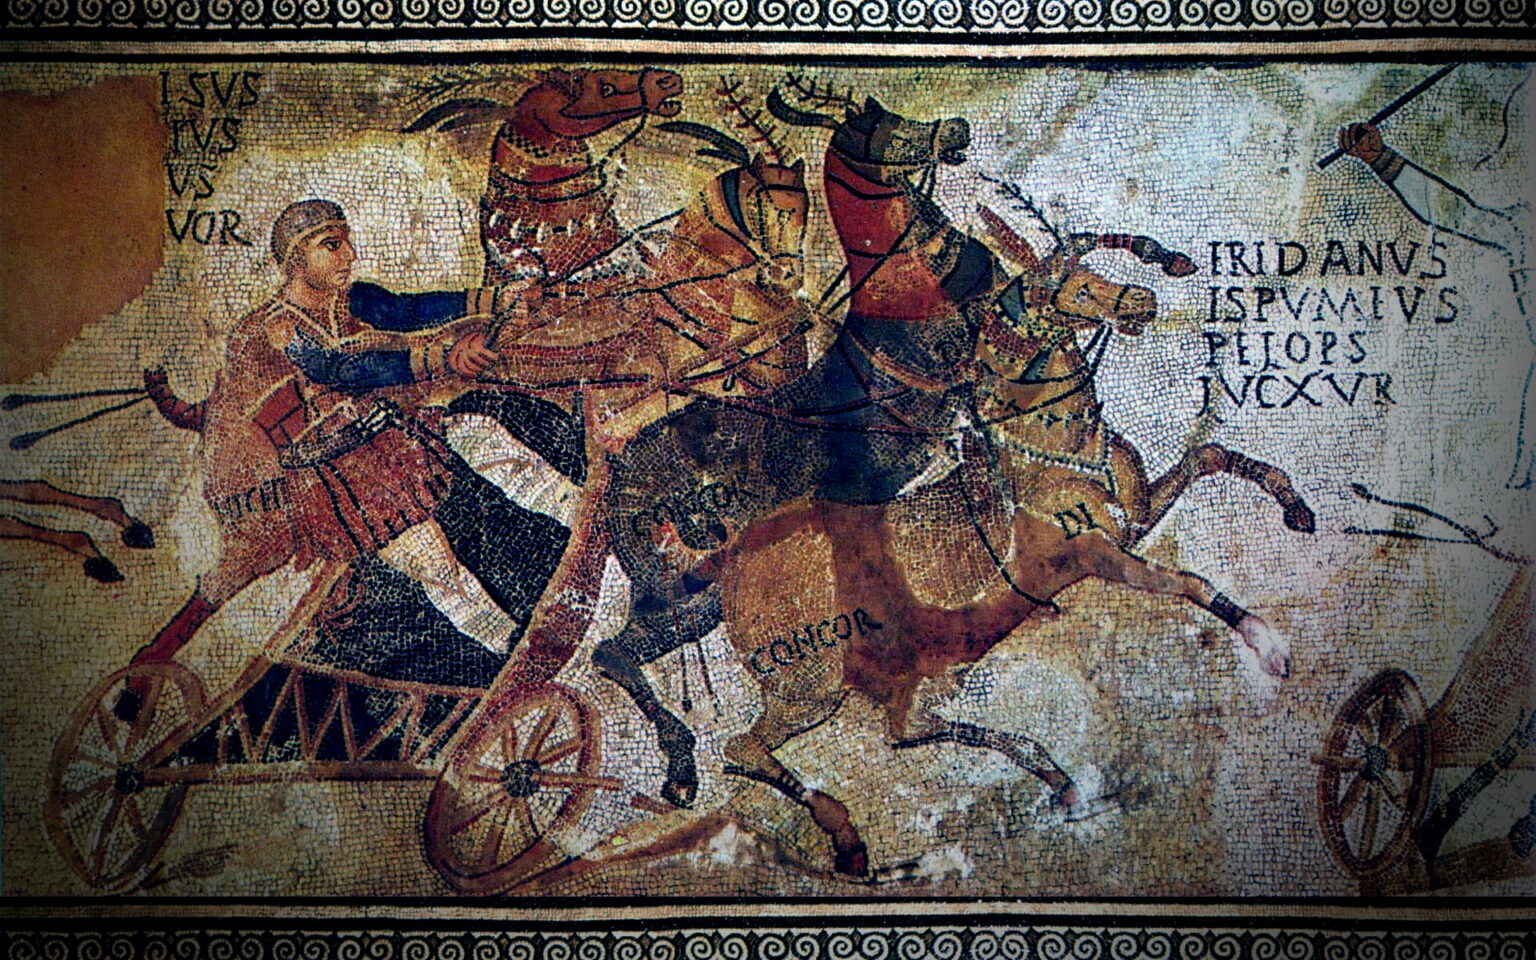 древний рим колесница